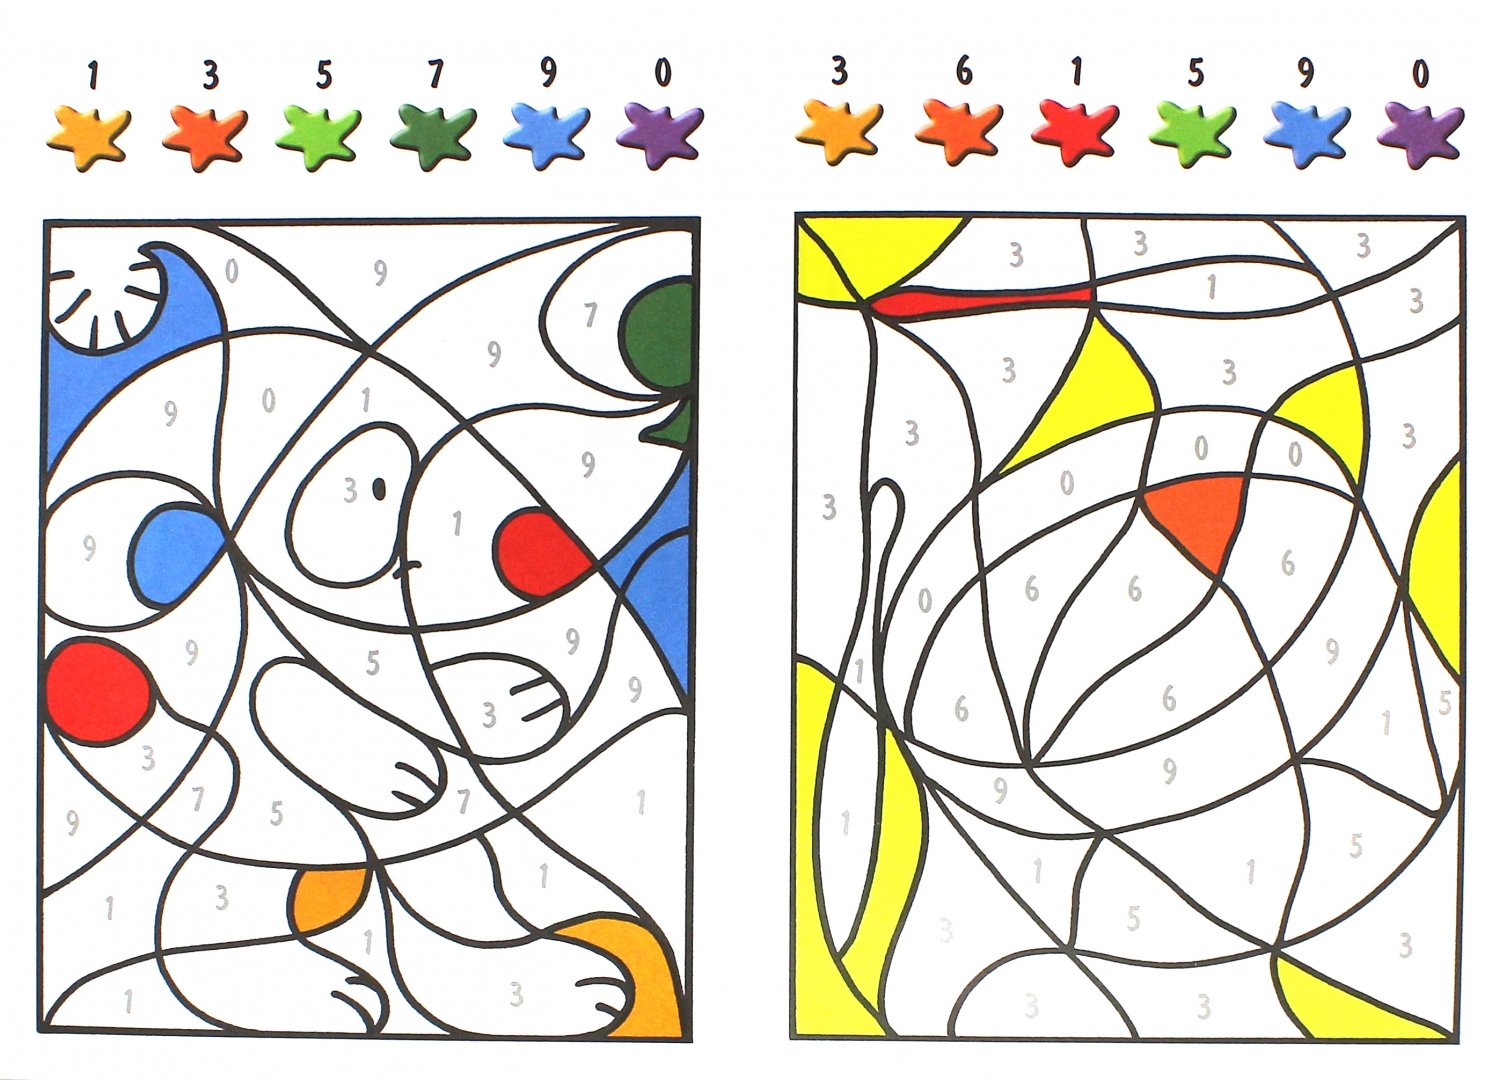 Игра раскраска для детей 5. Раскраска по образцу. Игры для детей: раскраски. Раскрашивание по цветам для малышей. Раскраски по образцу для детей.